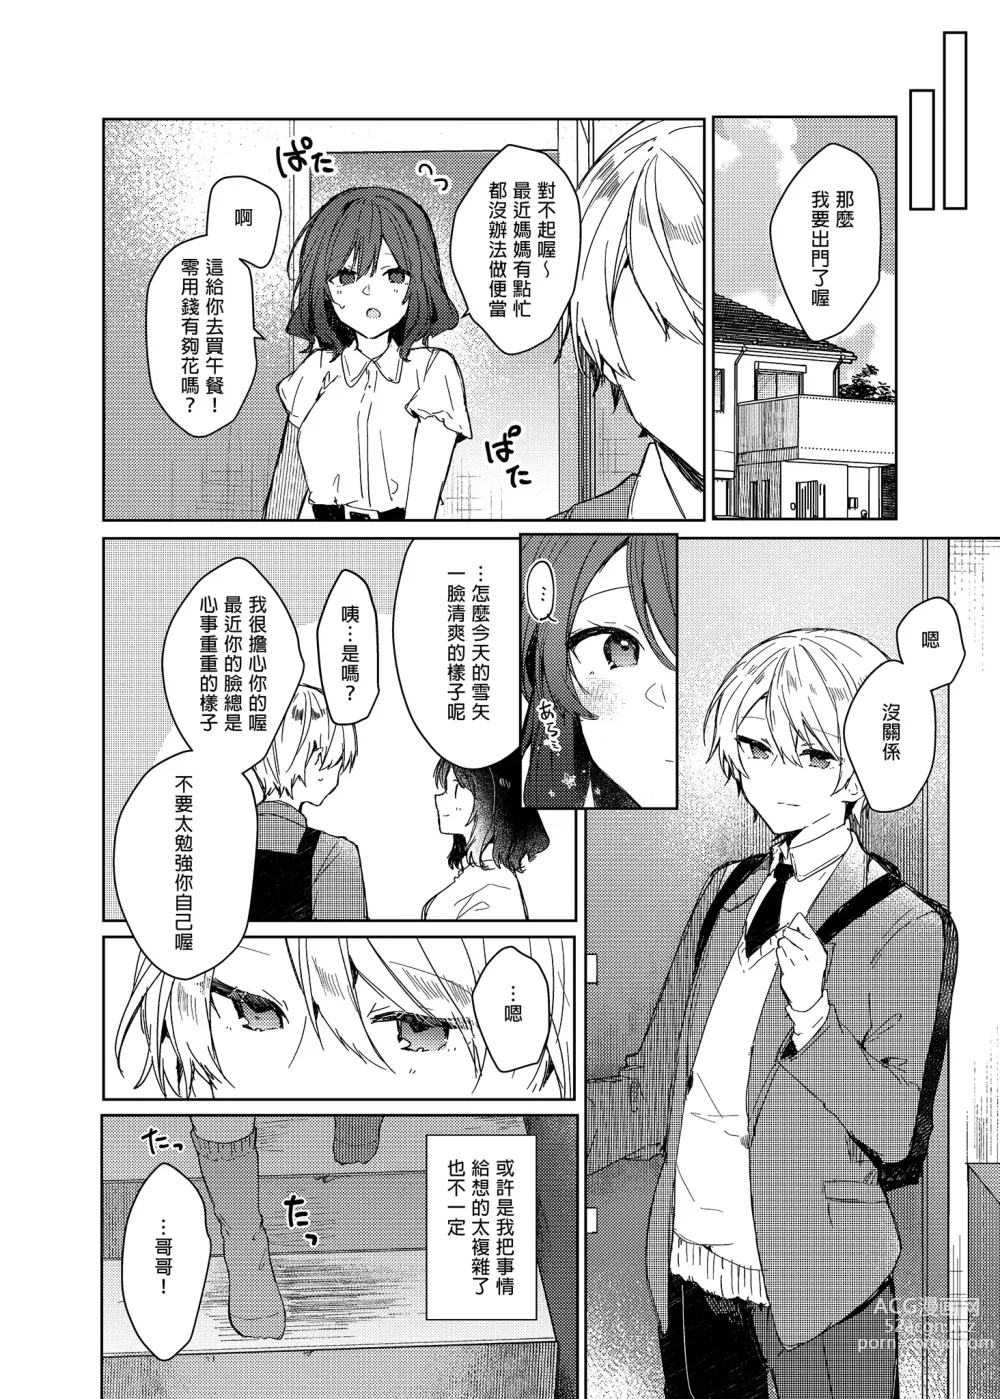 Page 50 of doujinshi 今天開始當個壞孩子。 (decensored)